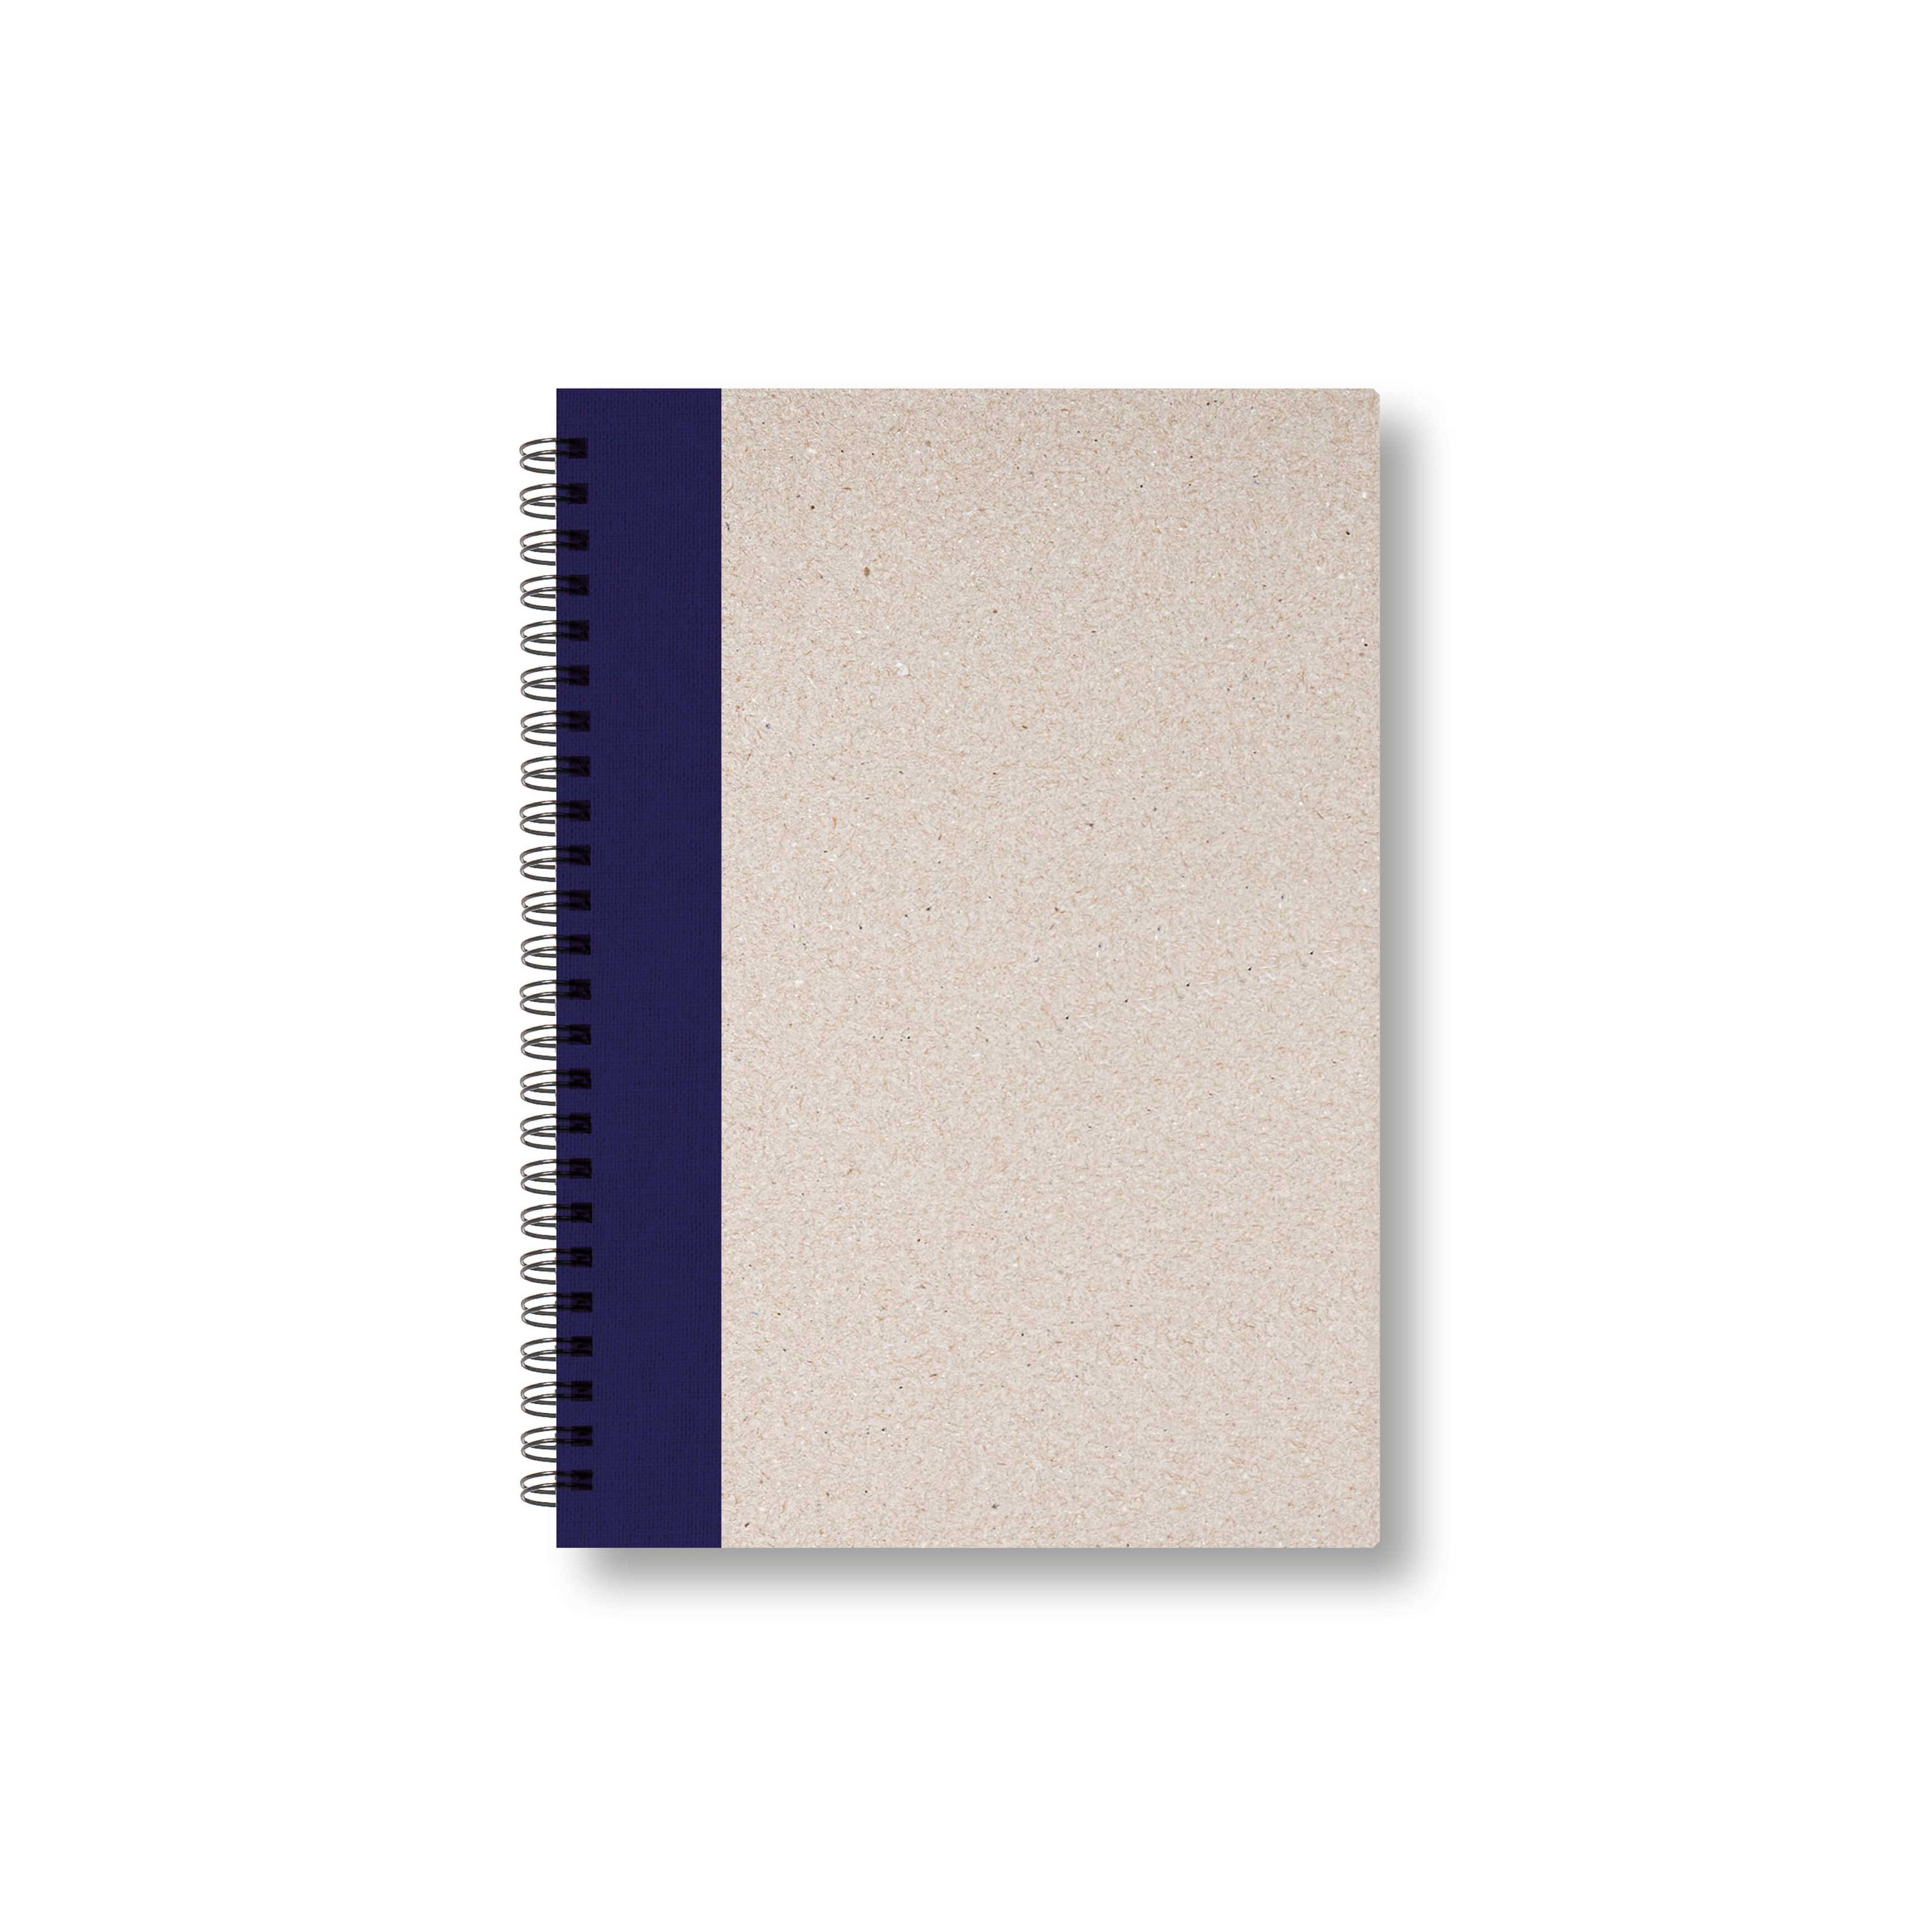 BOBO Zápisník, B6, linkovaný, tmavě modrý, konfiguruj si obálku